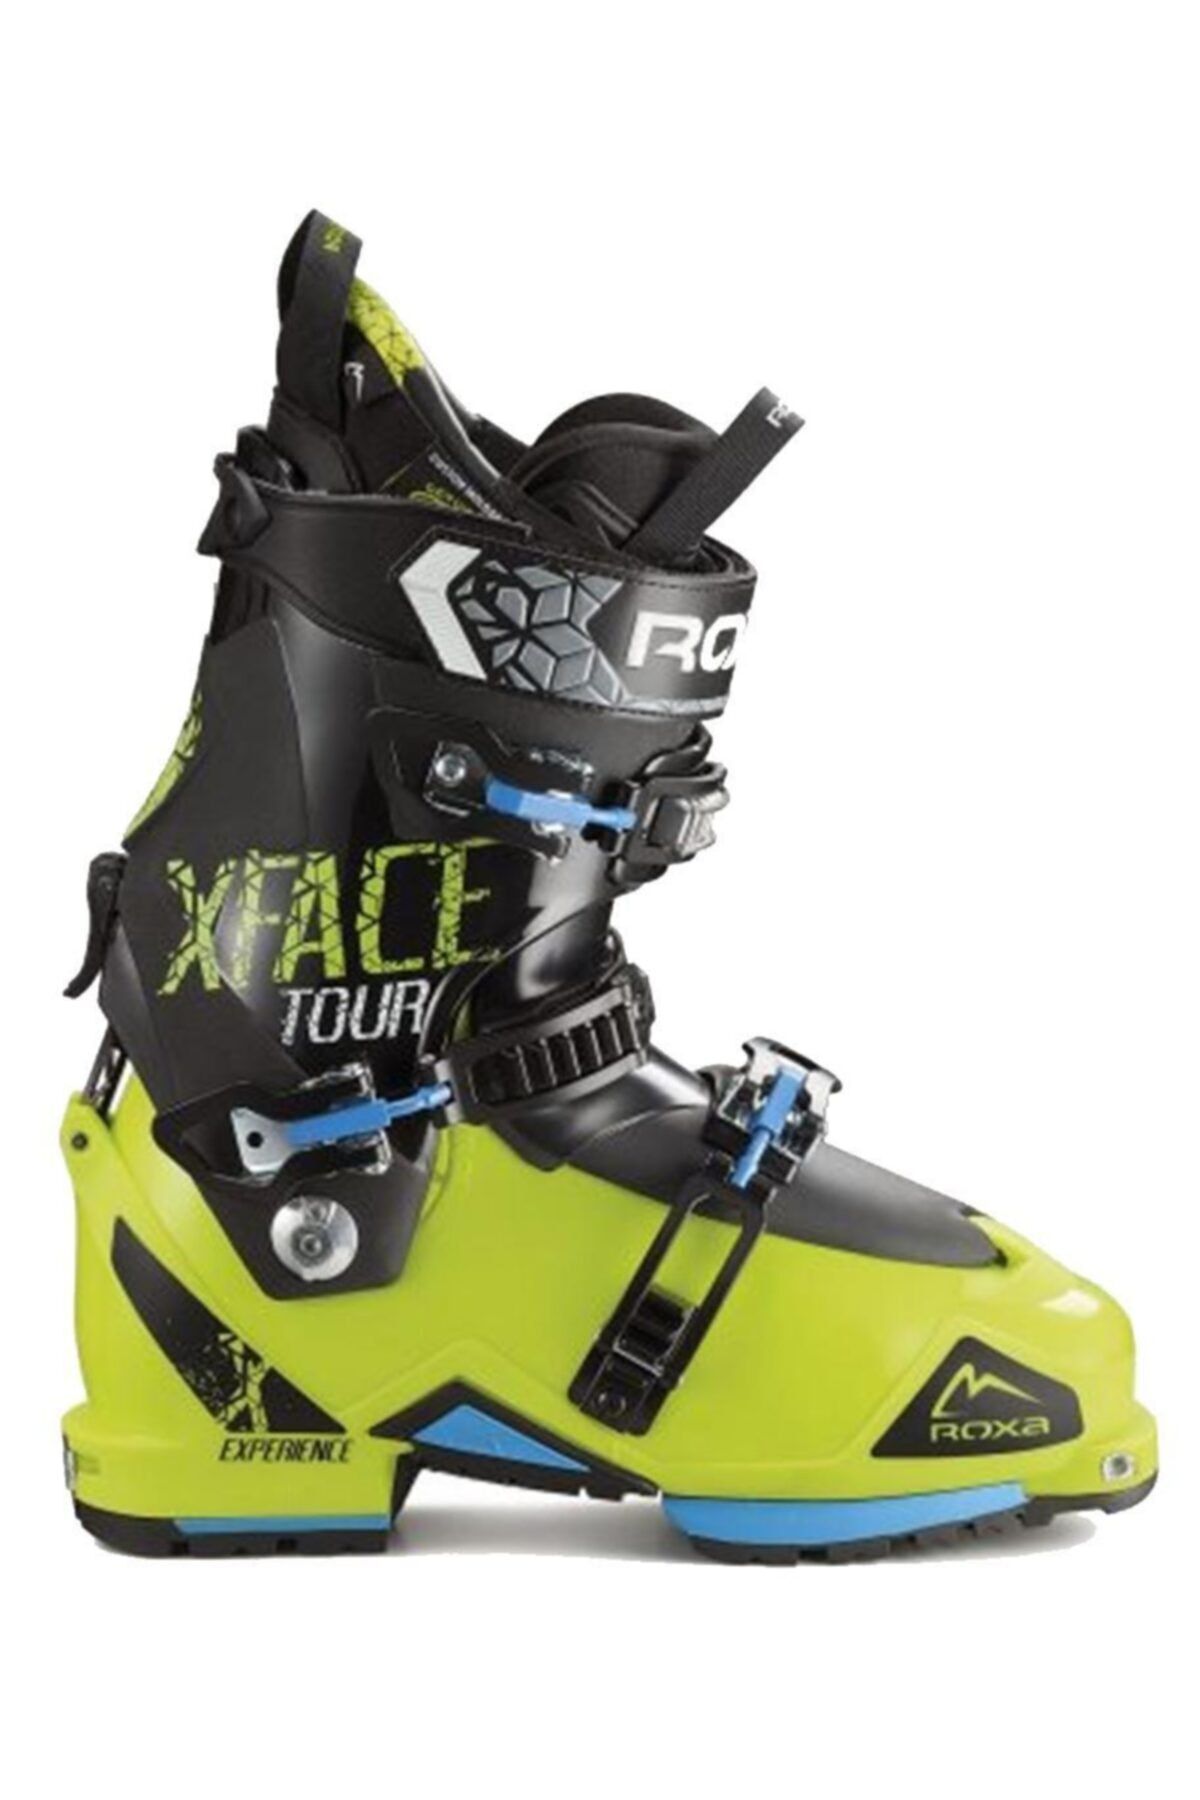 Roxa X-face Tur - Kayak Ayakkabısı